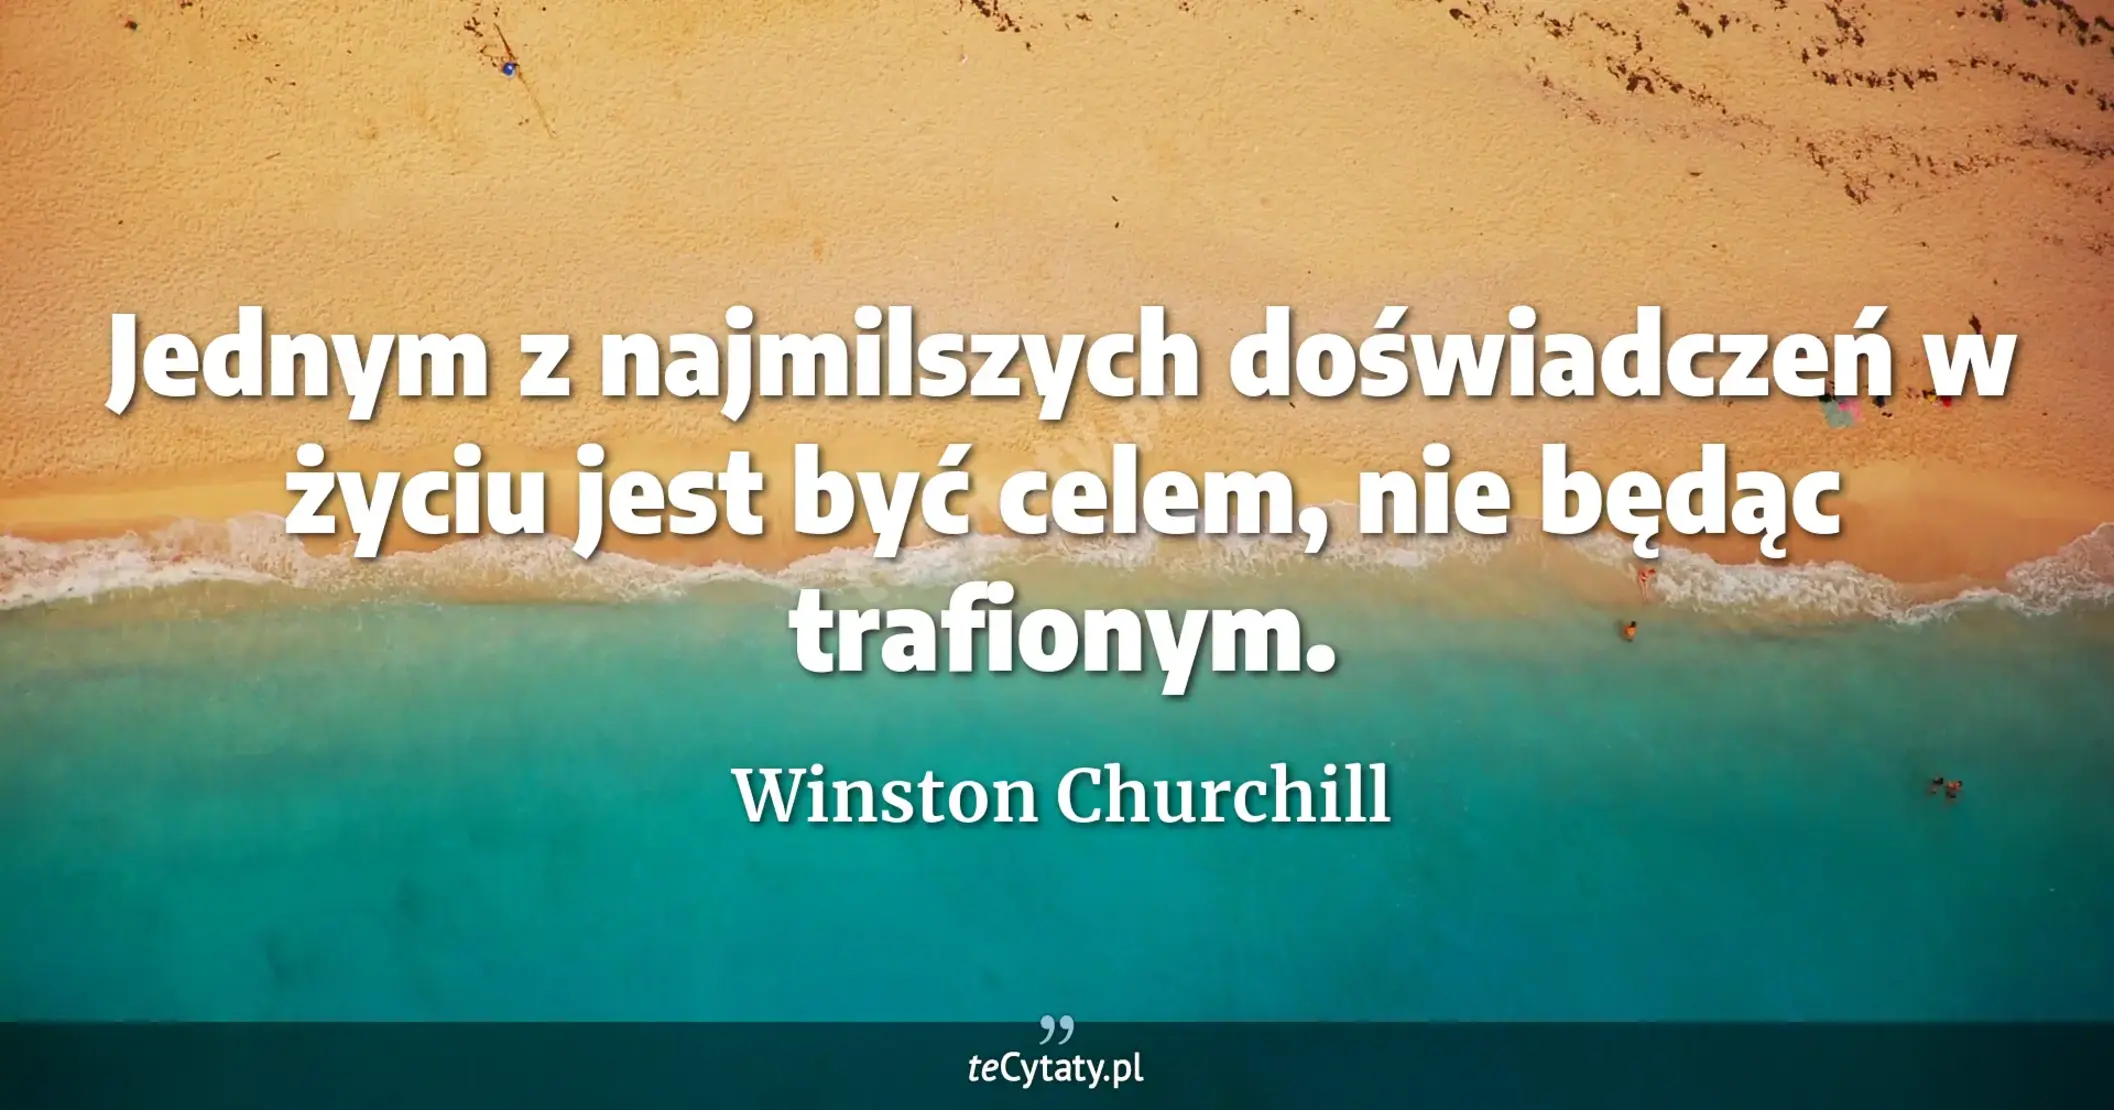 Jednym z najmilszych doświadczeń w życiu jest być celem, nie będąc trafionym. - Winston Churchill